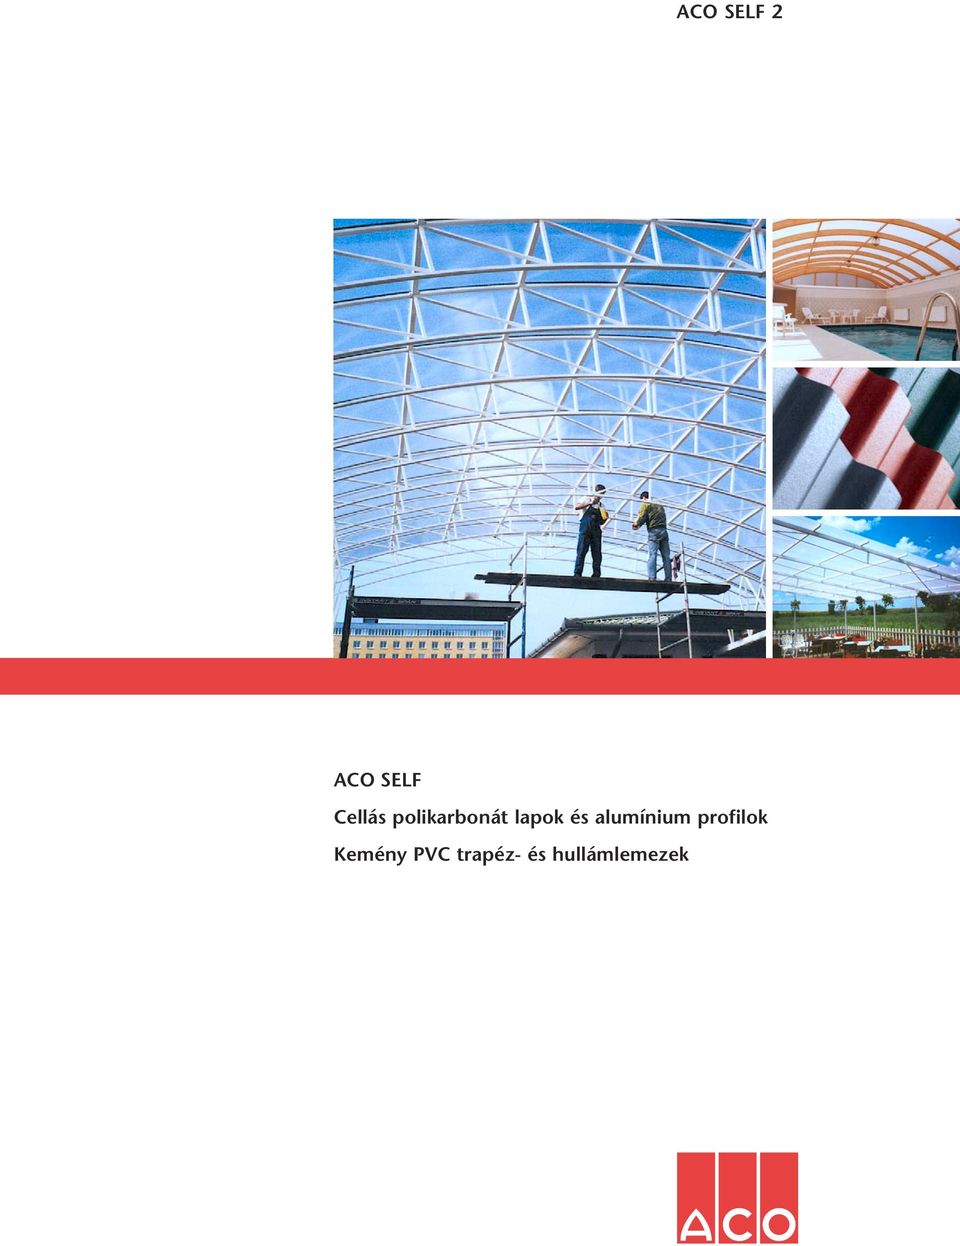 ACO SELF 2. ACO SELF Cellás polikarbonát lapok és alumínium profilok Kemény  PVC trapéz- és hullámlemezek - PDF Ingyenes letöltés